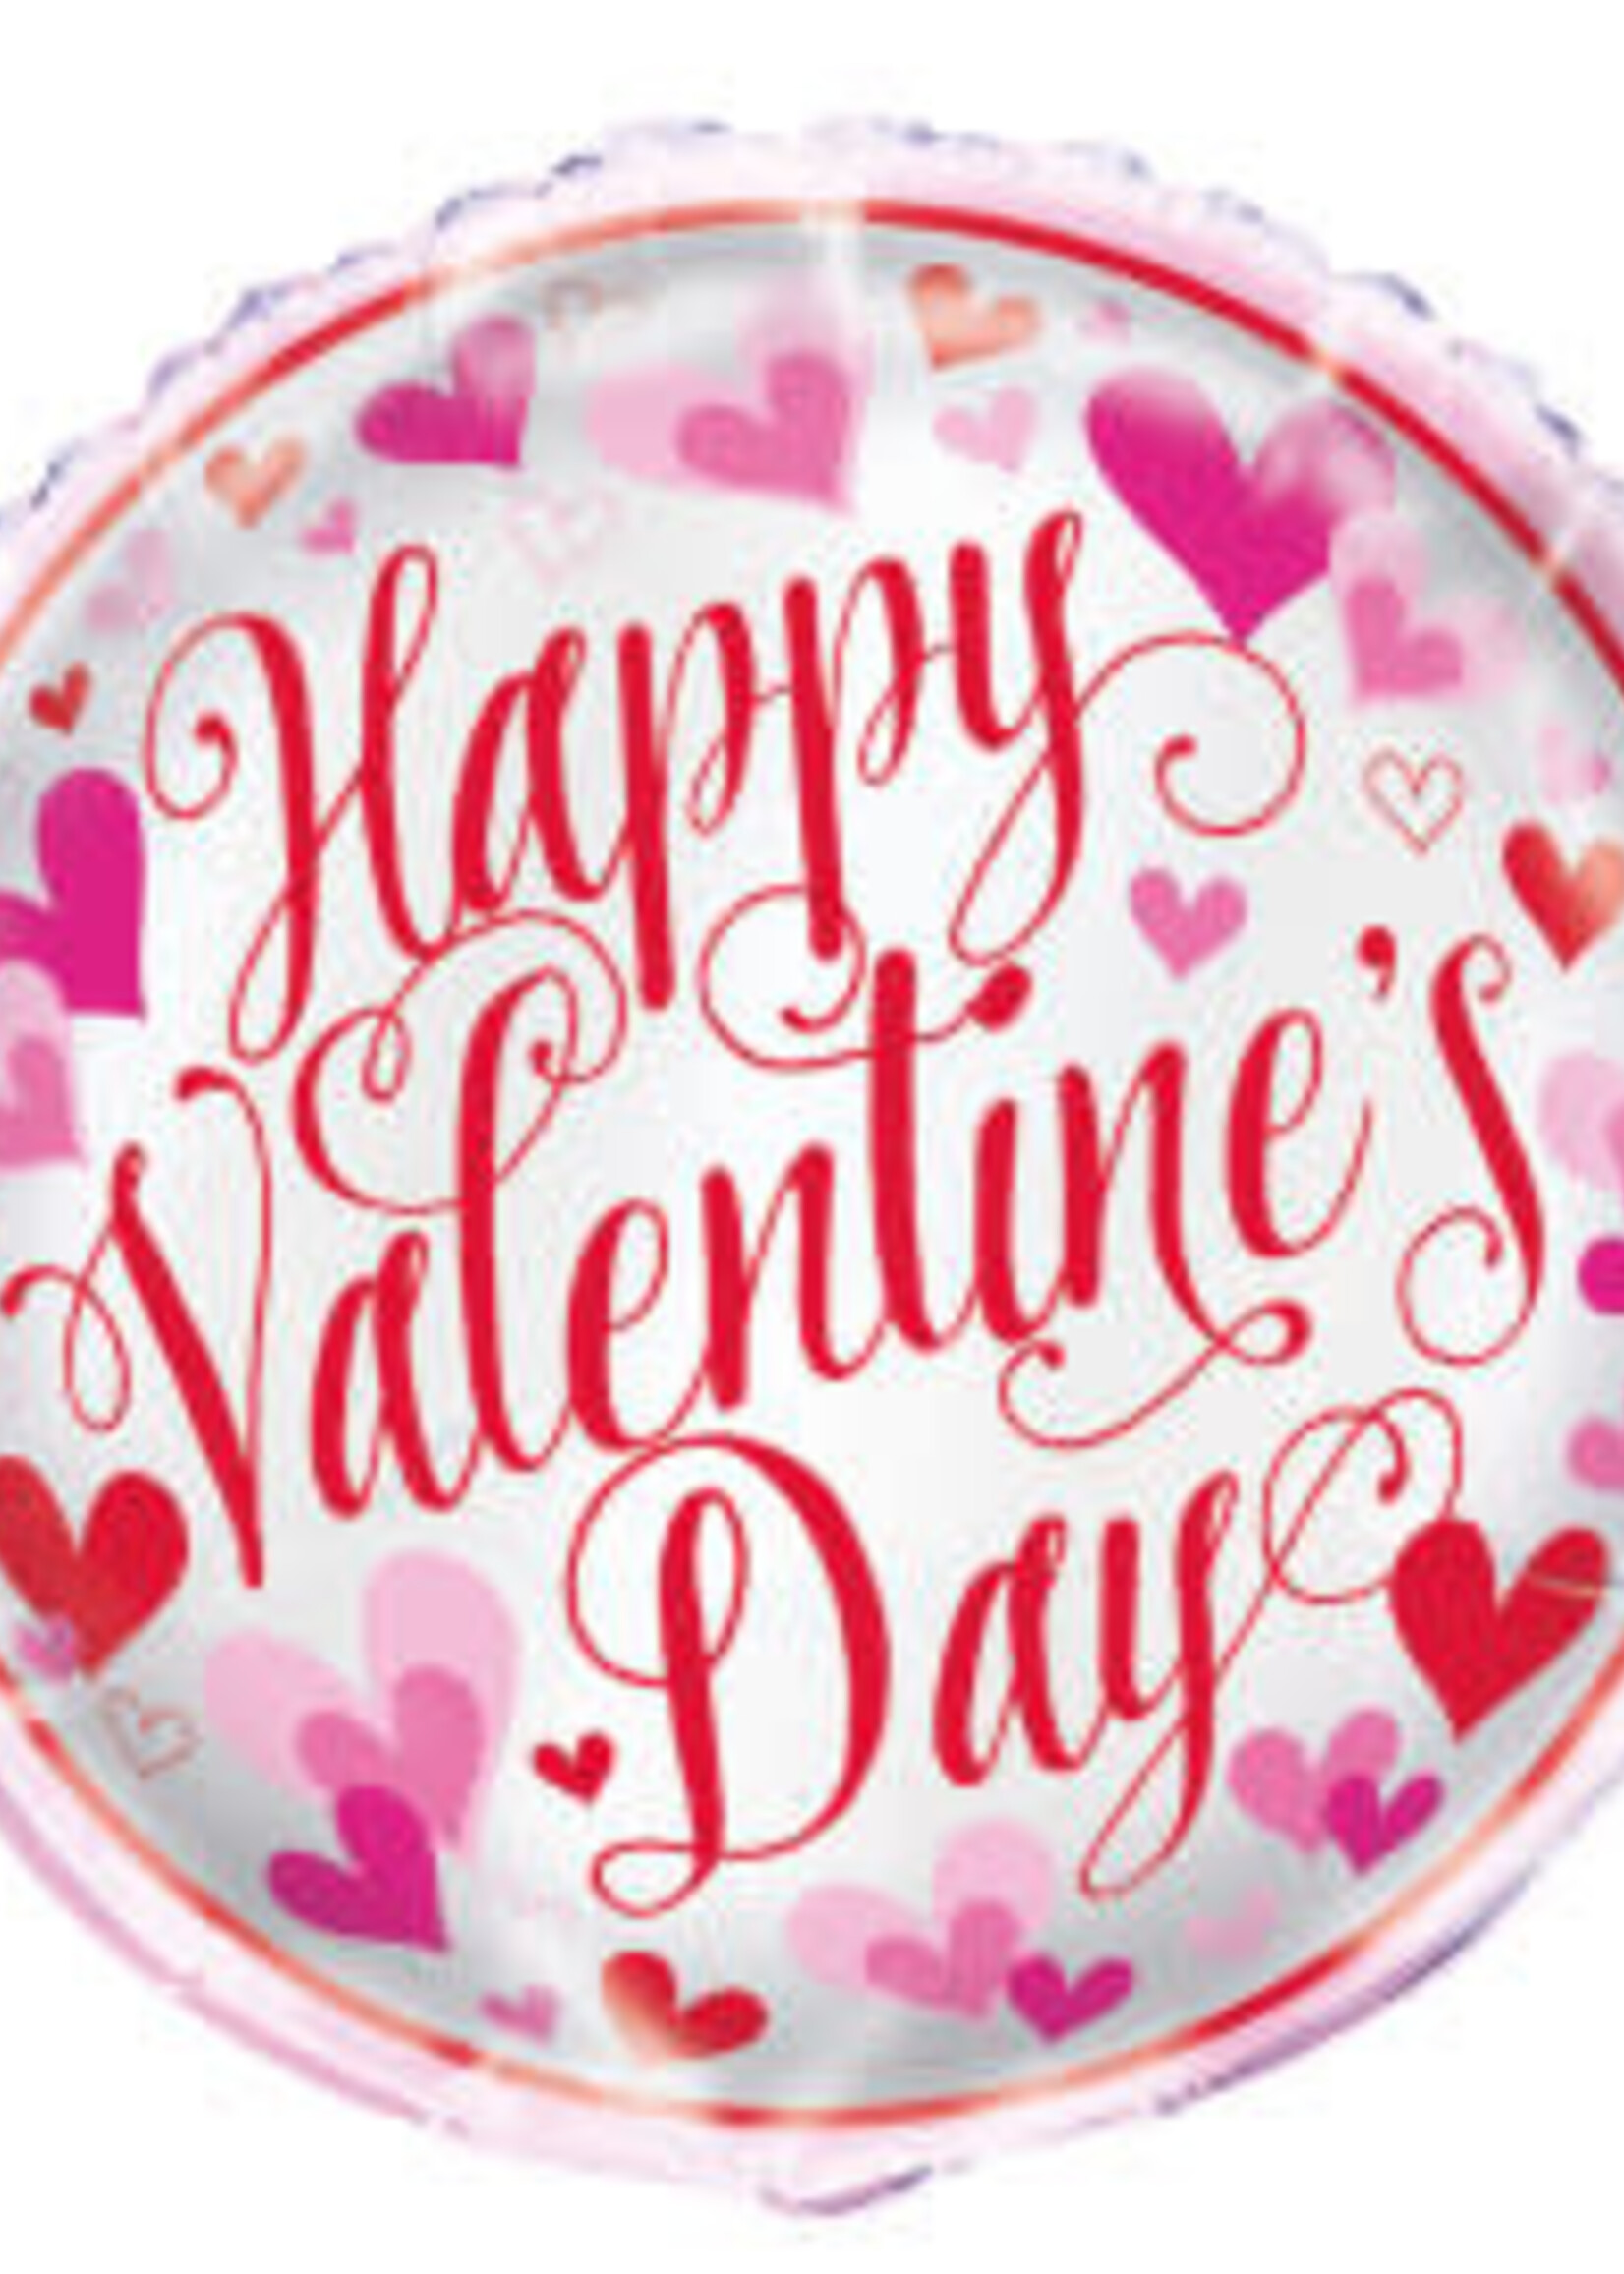 Red & Pink Hearts Valentine's Day Round Foil Balloon 18", Bulk